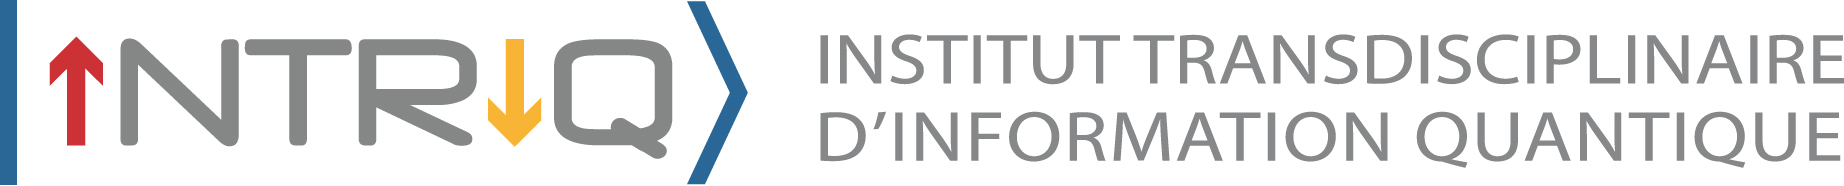 Institut Transdisciplinaire d'Information Quantique